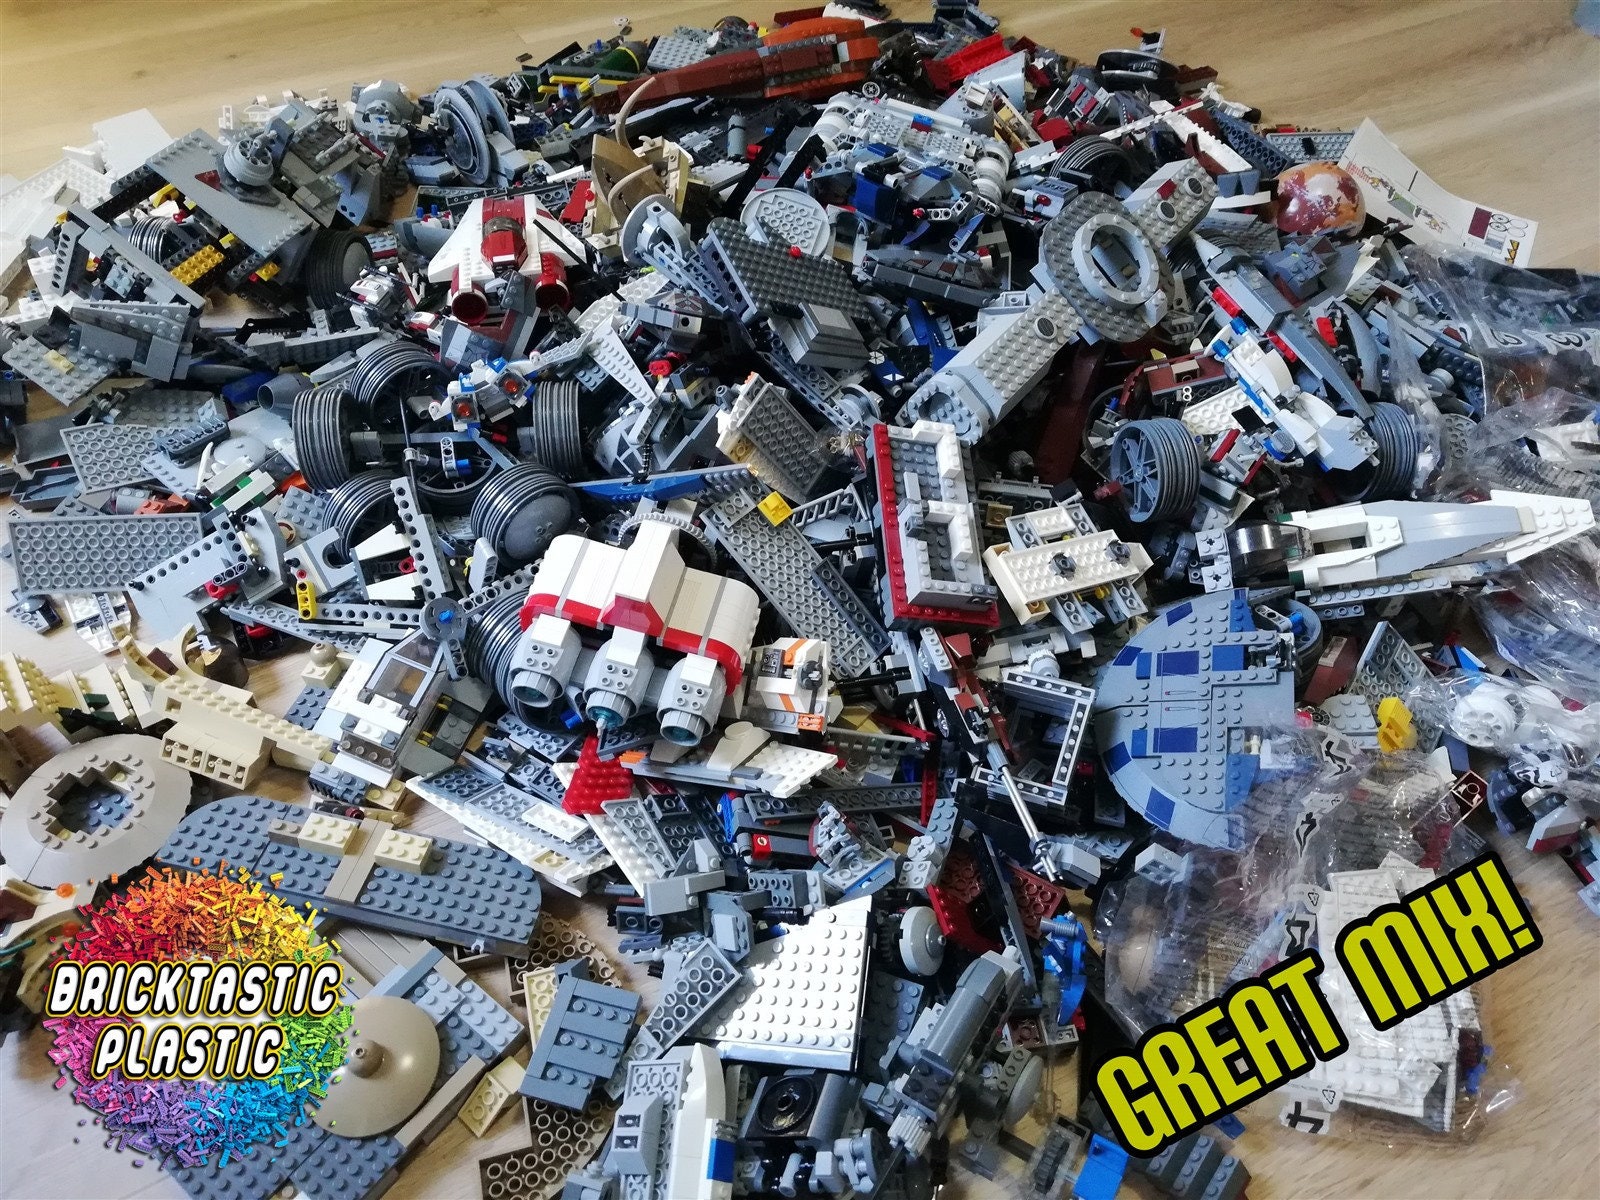 Genuine Lego Bundle 1kg-1000 pieces Mixed Bricks ! Pieces + 2 MINIFIGURES  !!!!